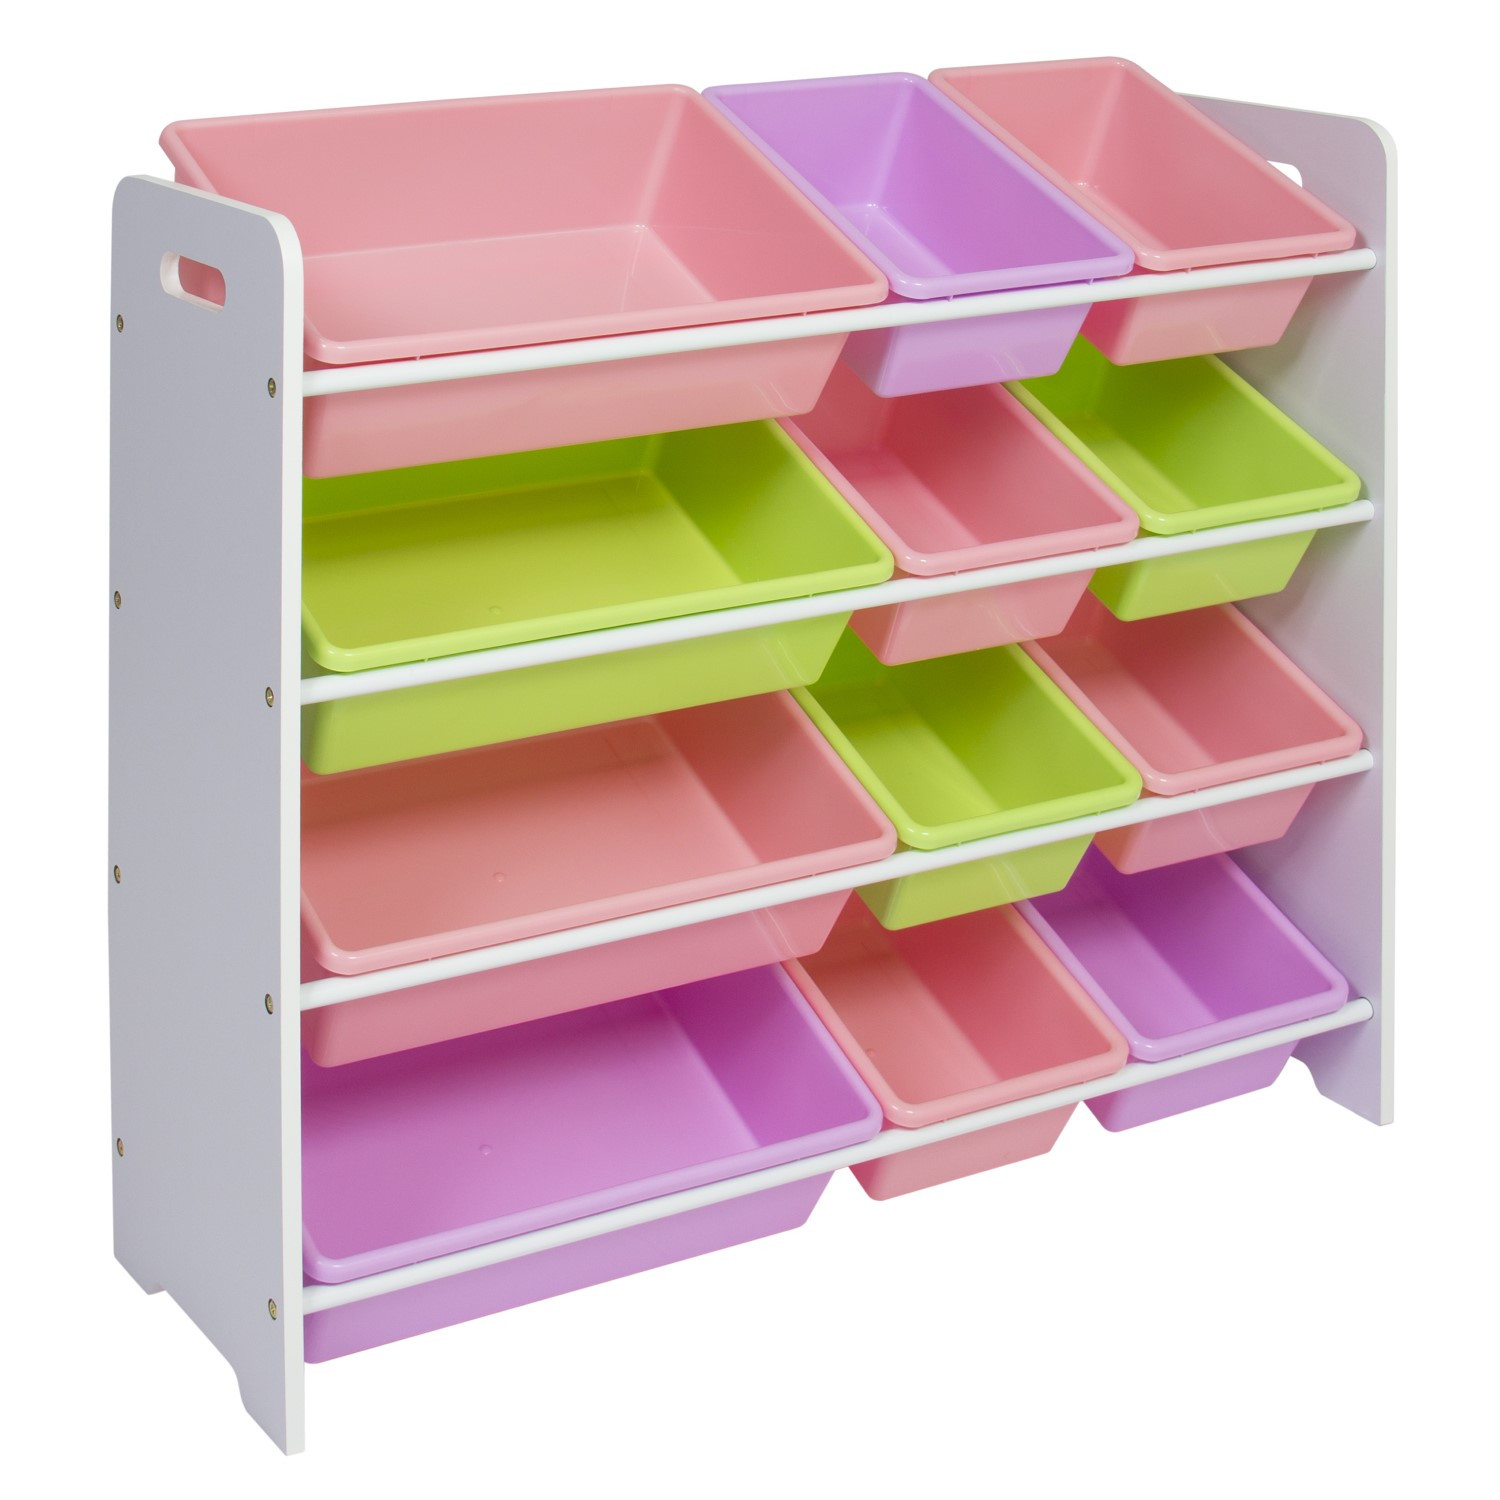 Bedroom Storage Bins
 Best Choice Products Toy Bin Organizer Kids Childrens